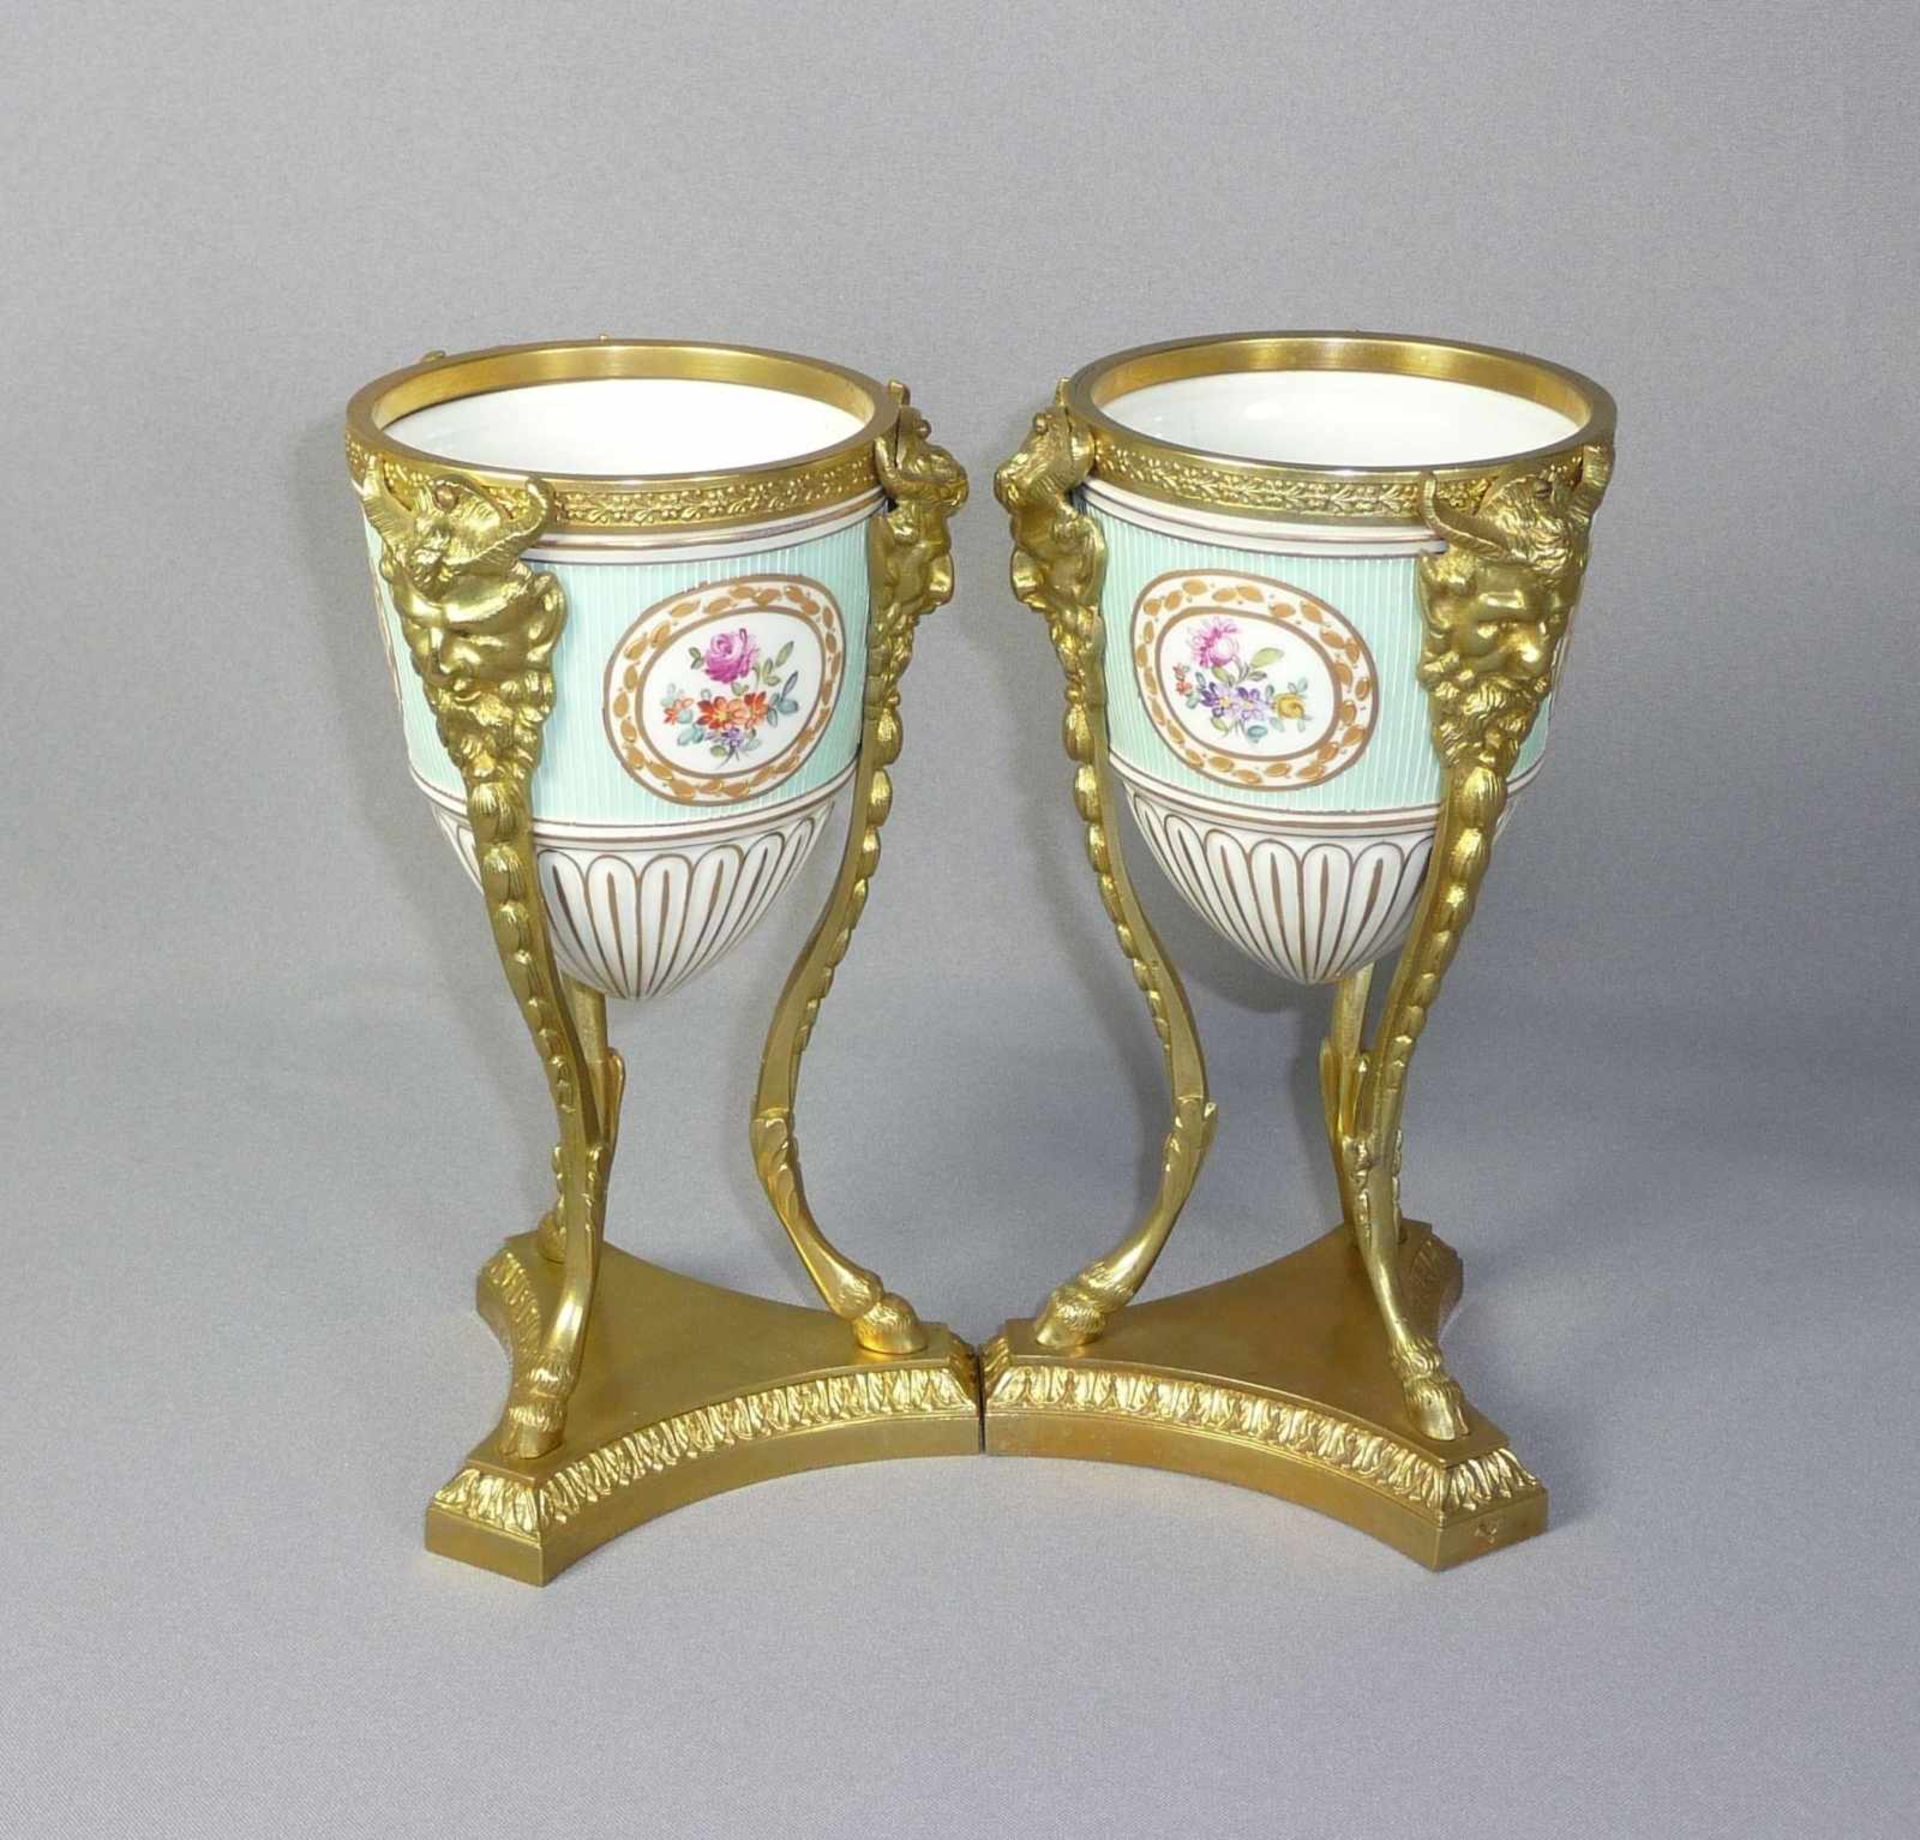 Kleines Potpourri-Vasenpaar mit vergoldeter Montierung Frankreich, 19. Jh. Ovoides Gefäß gefasst von - Bild 2 aus 7